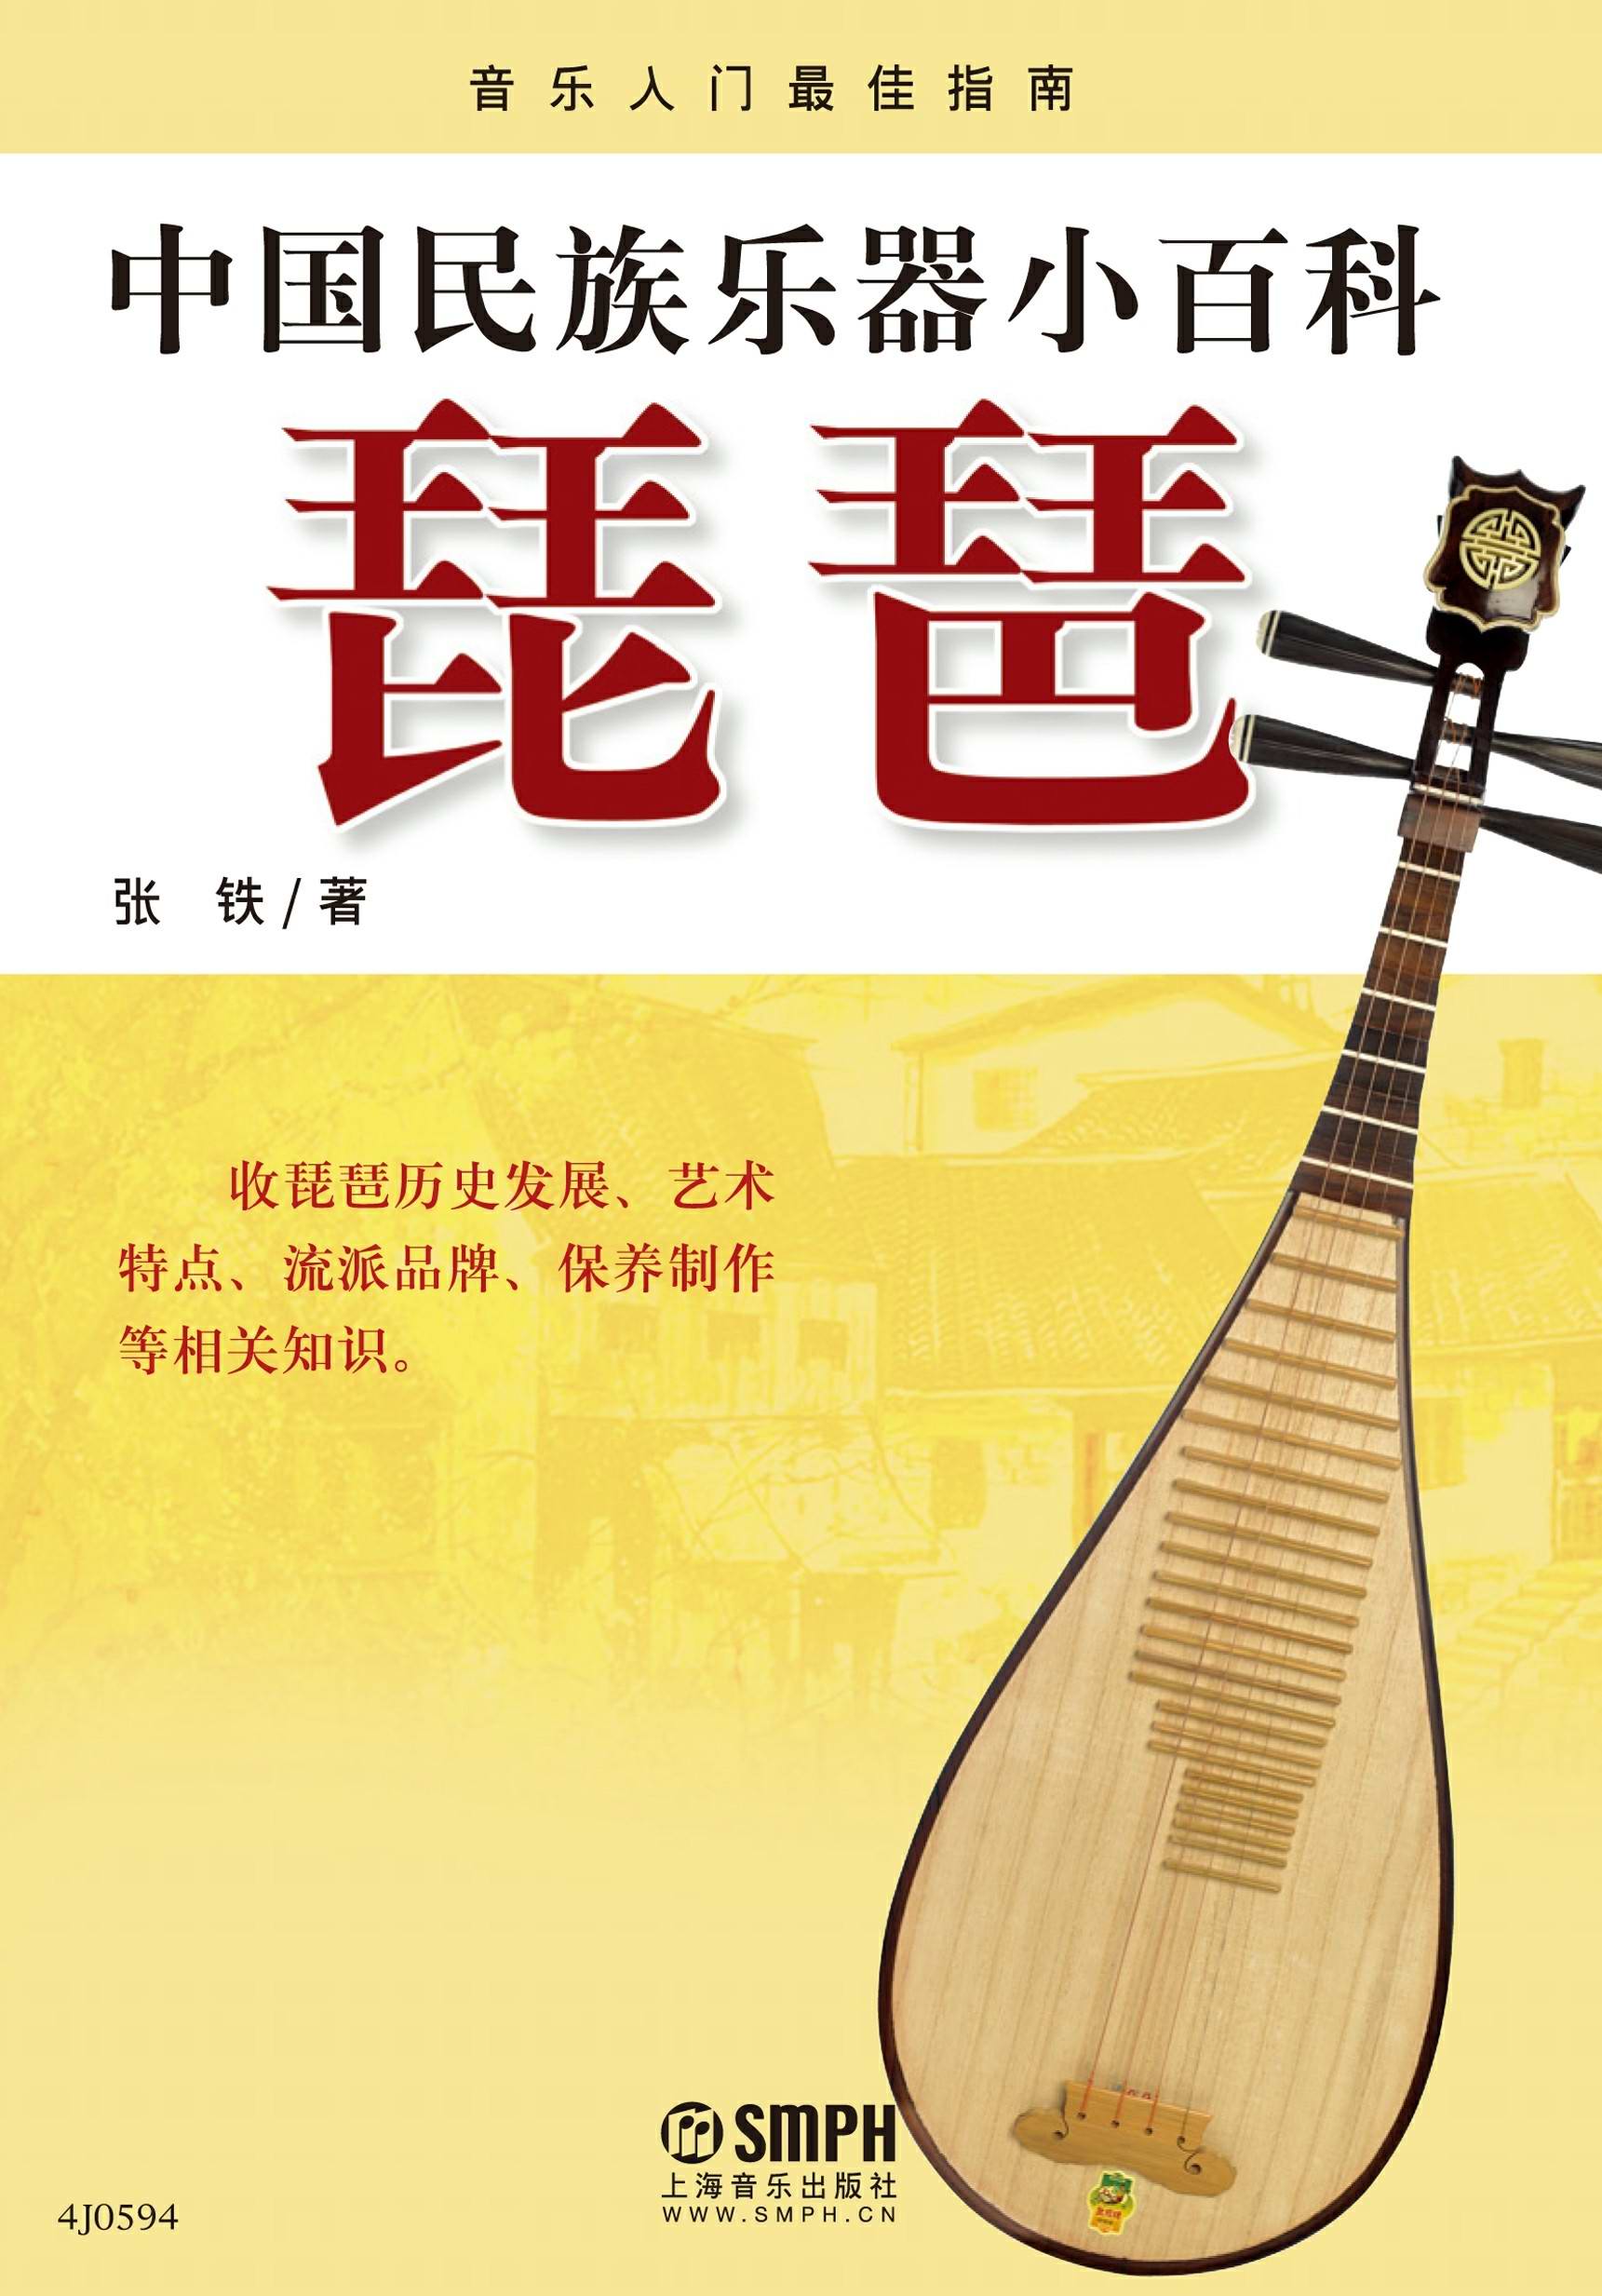 中国民族乐器小百科——琵琶